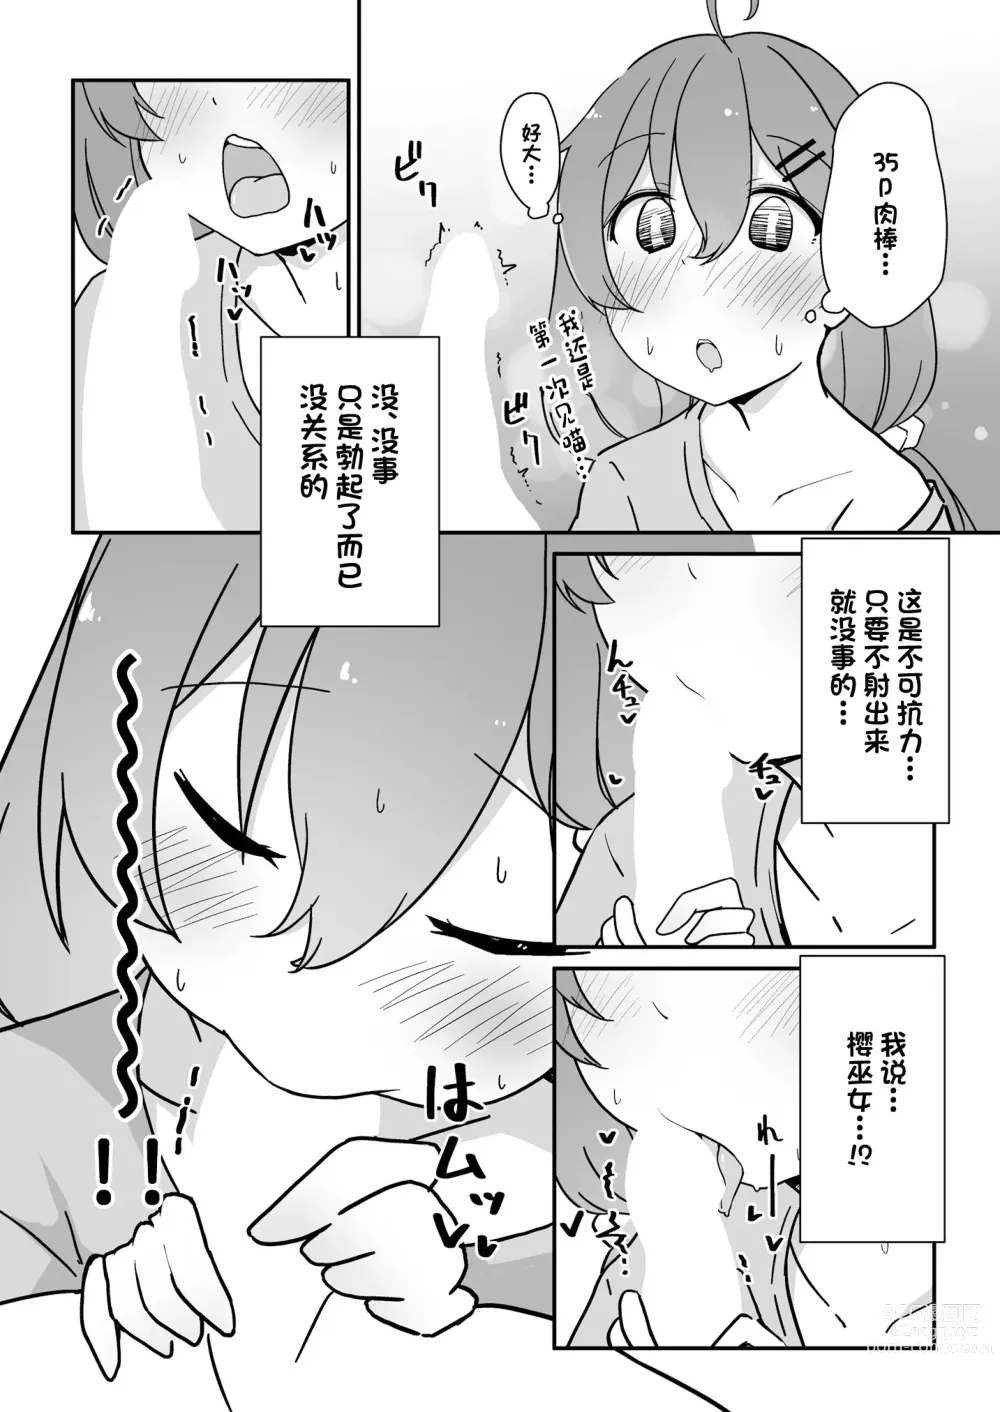 Page 14 of doujinshi Kizuitara 35P ni Natteita!?